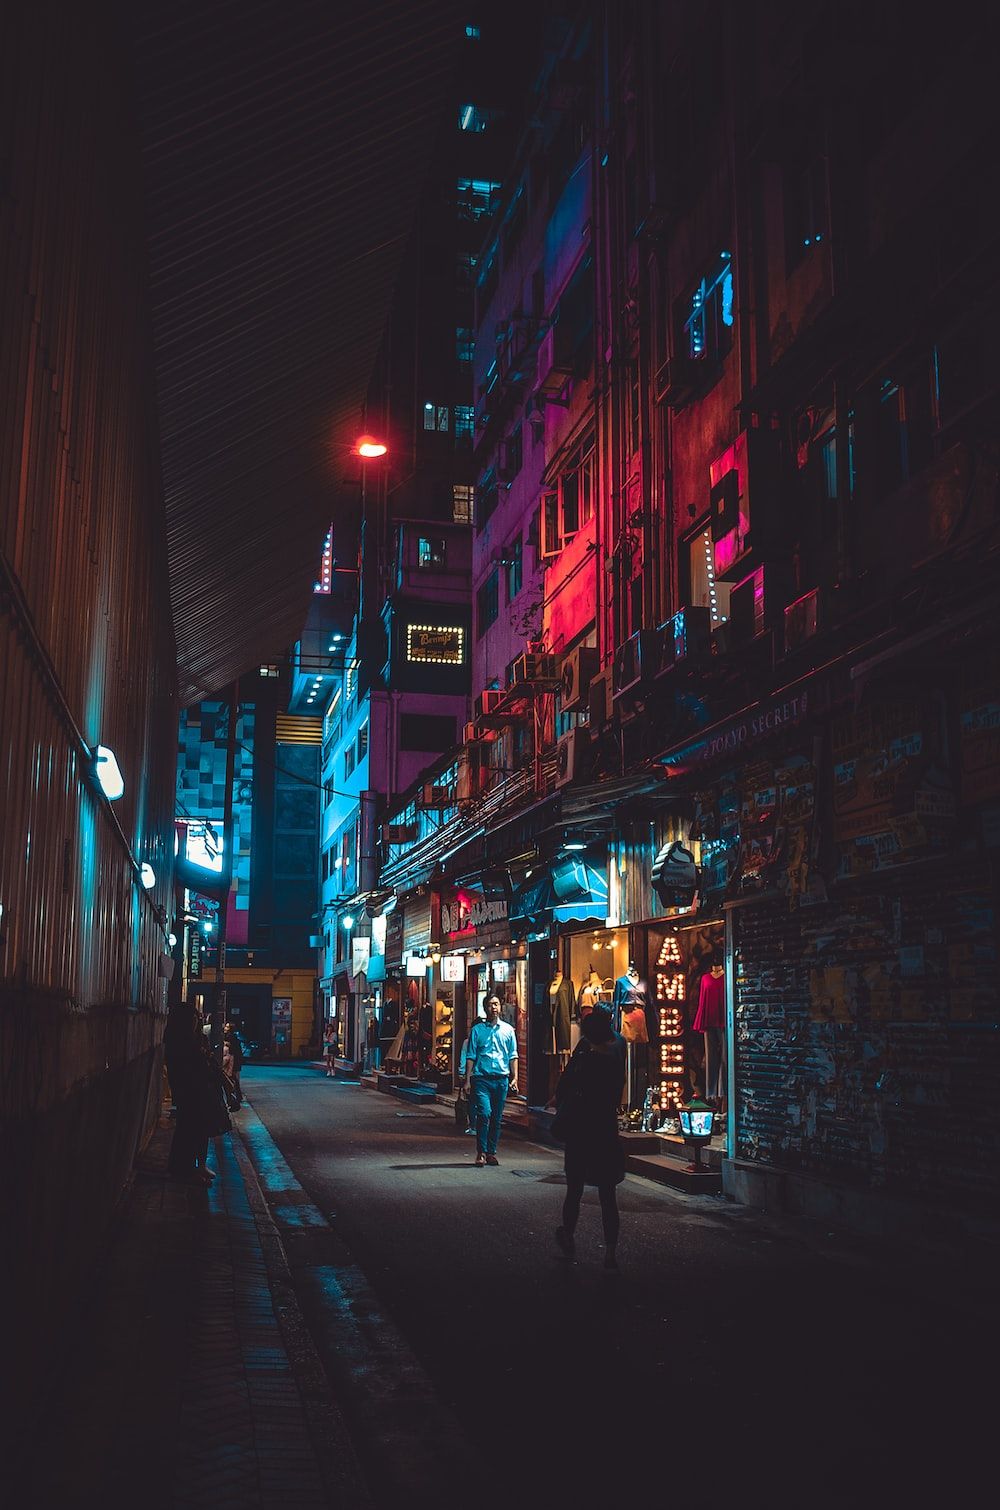  Außergewöhnliche Hintergrundbild 1000x1510. Bilder zum Thema Kowloon. Kostenlose Bilder auf herunterladen